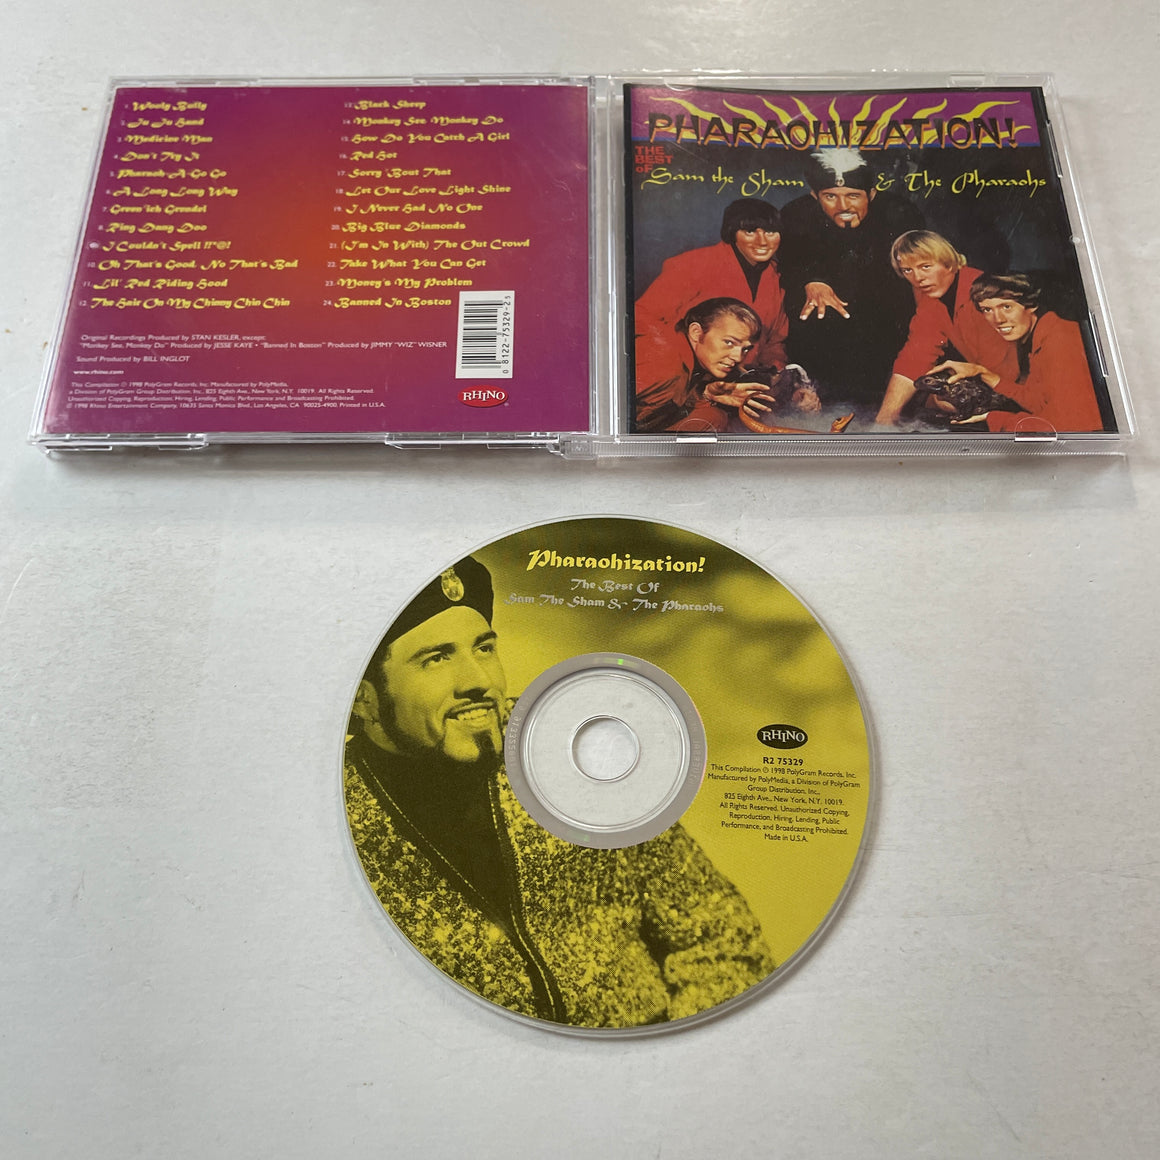 Sam The Sham & The Pharaohs Pharaohization! - The Best Of Sam The Sham & The Pharaohs Used CD VG+\VG+